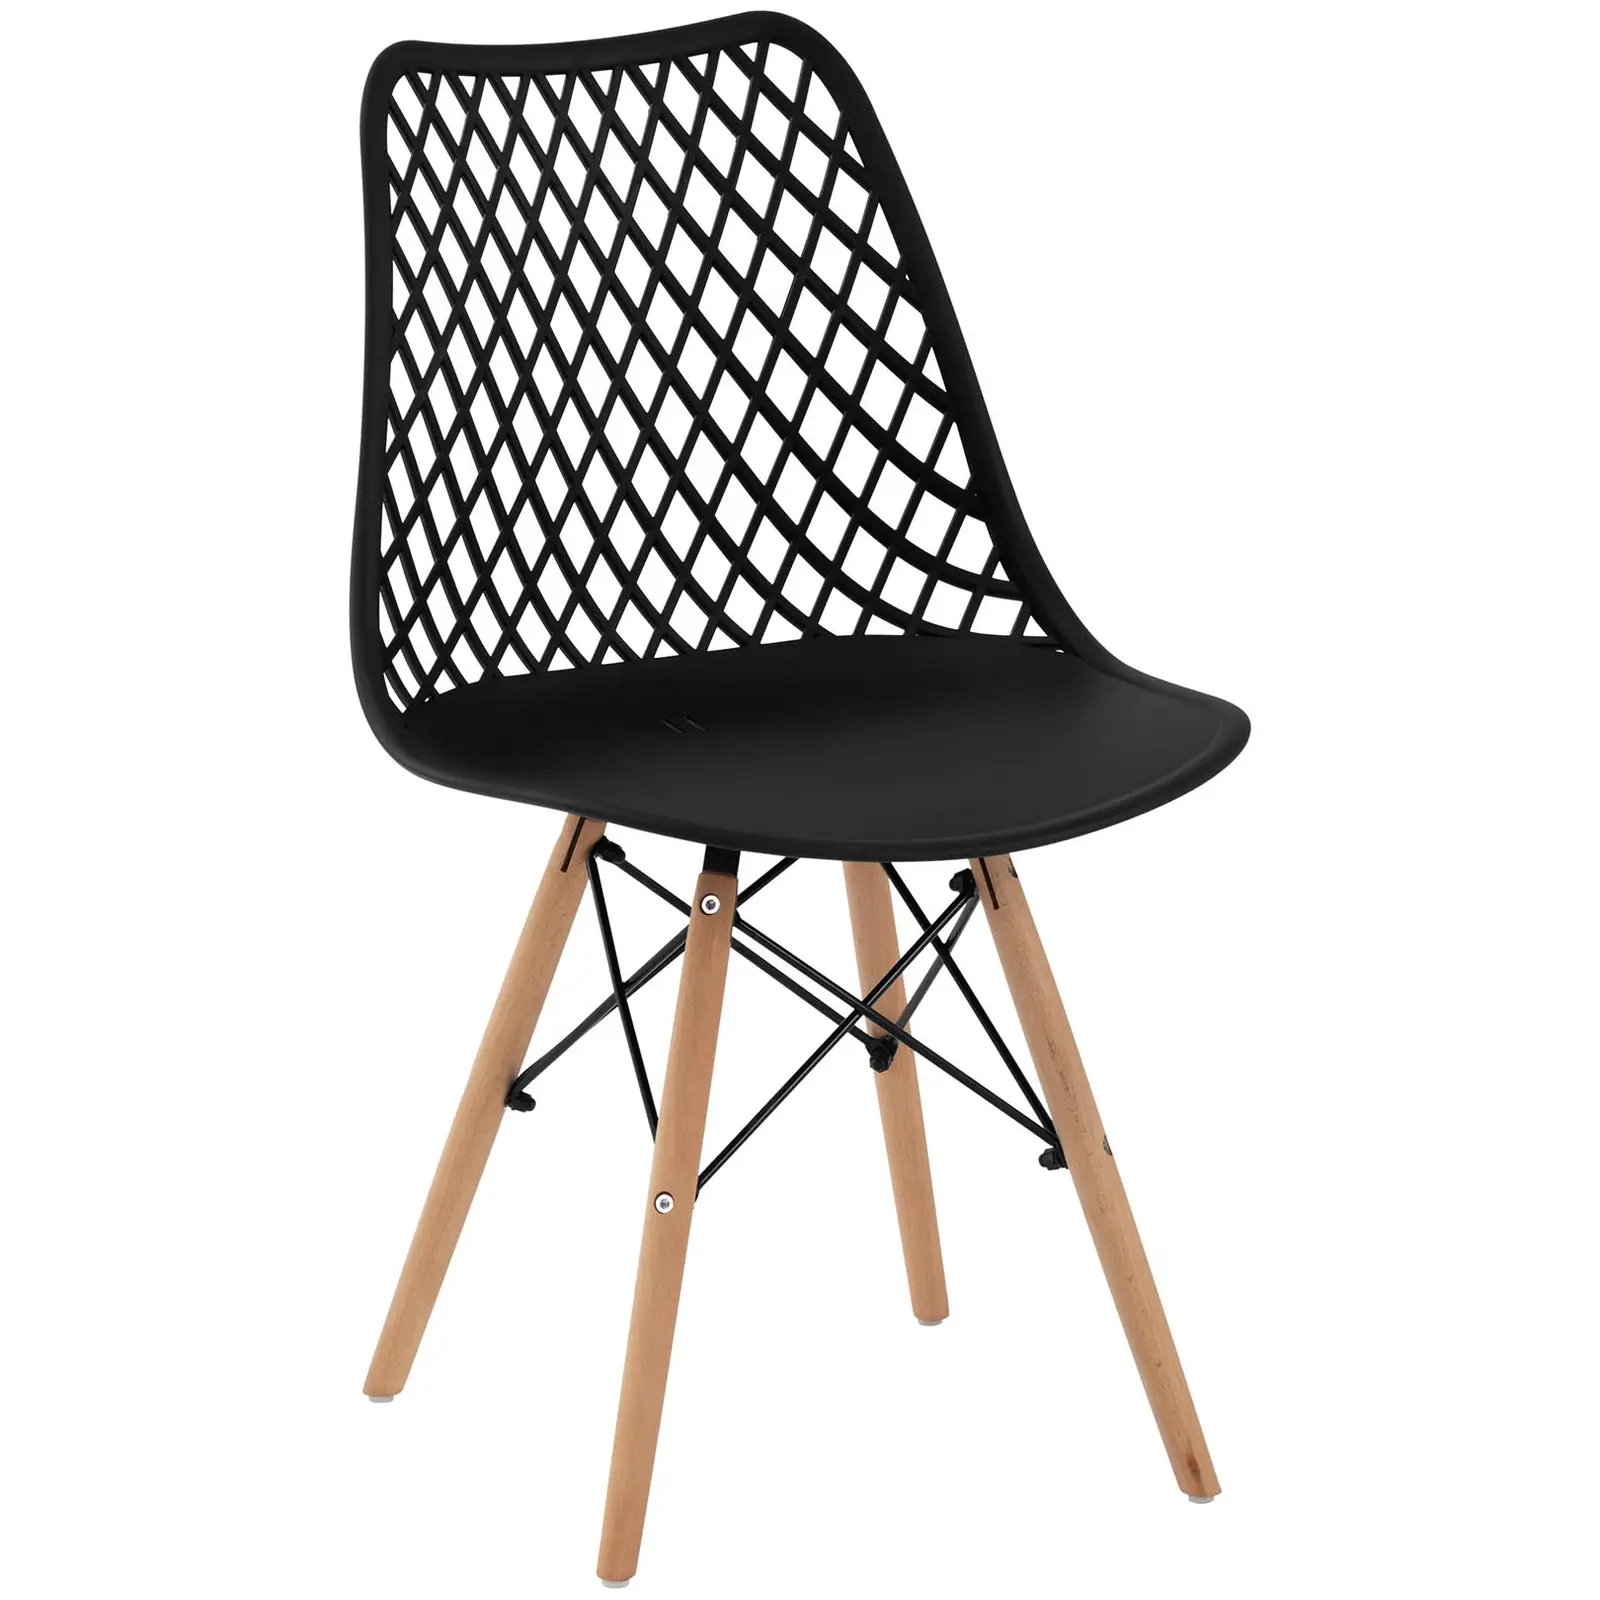 Chaise - Lot de 4 - 150 kg max. - Surface d'assise de 430 x 430 x 440 mm - Coloris noir